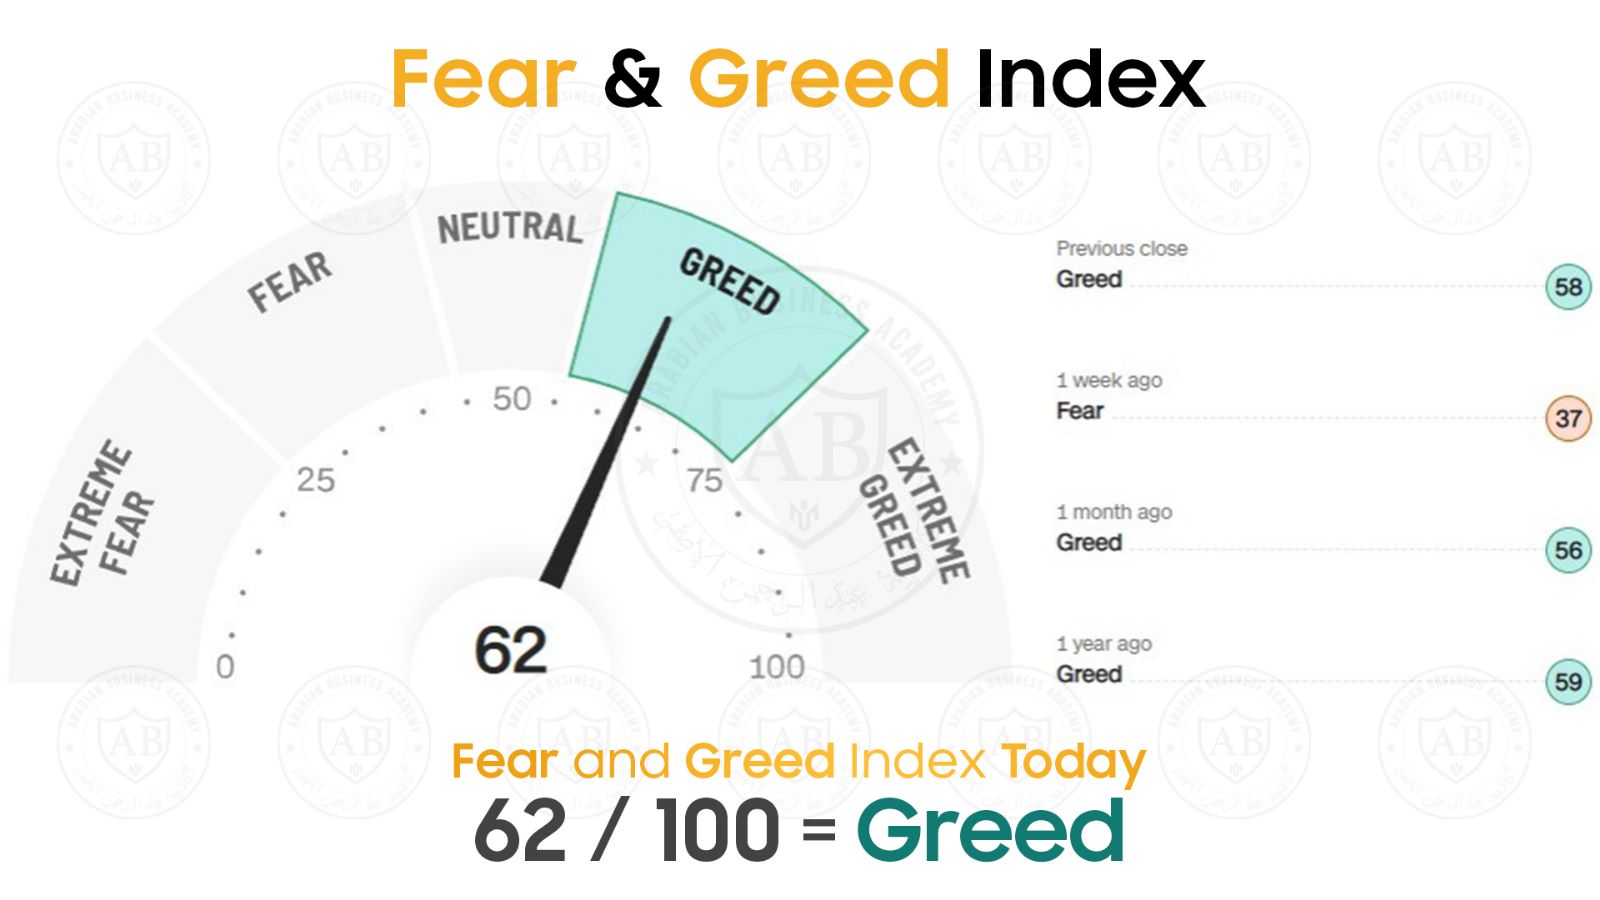 مؤشر  Fear and Greed  في أسواق الأسهم يشير  الى 62 /100  لجلسة اليوم